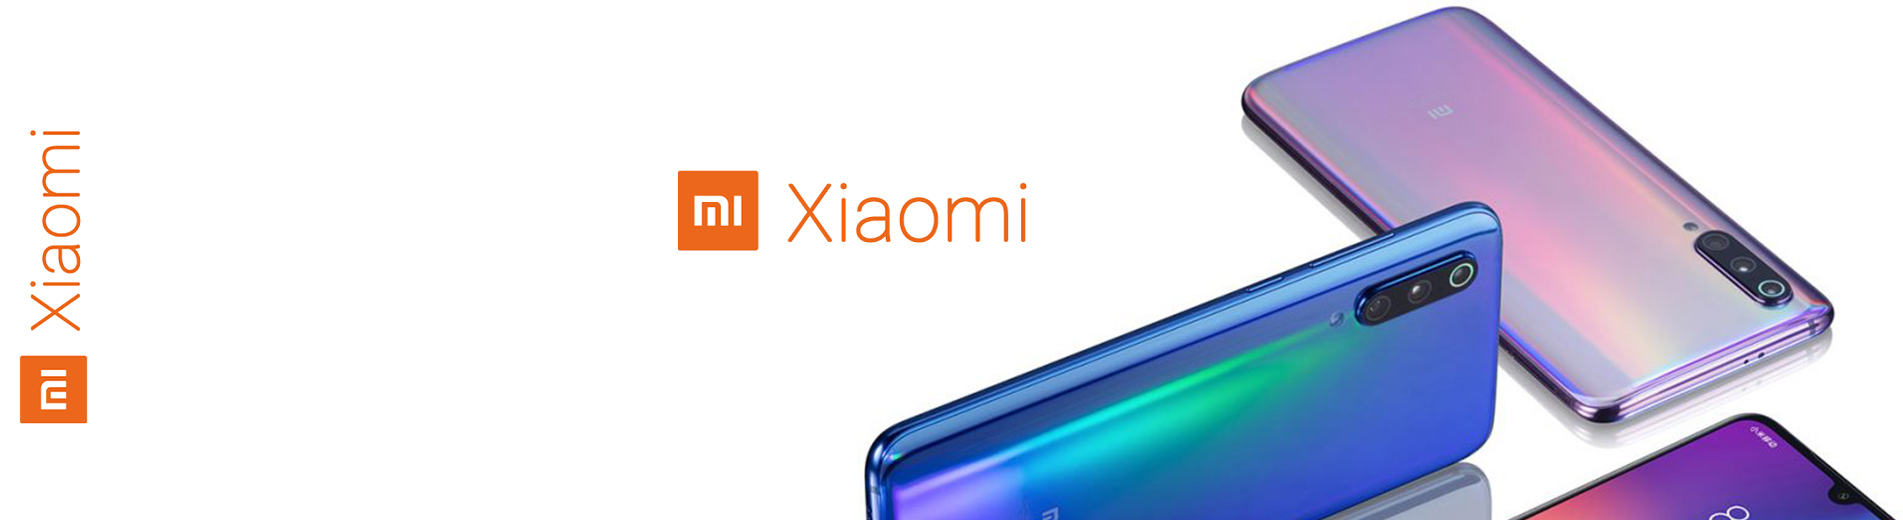 Xiaomi                                                                                                                                                                                                                                                         